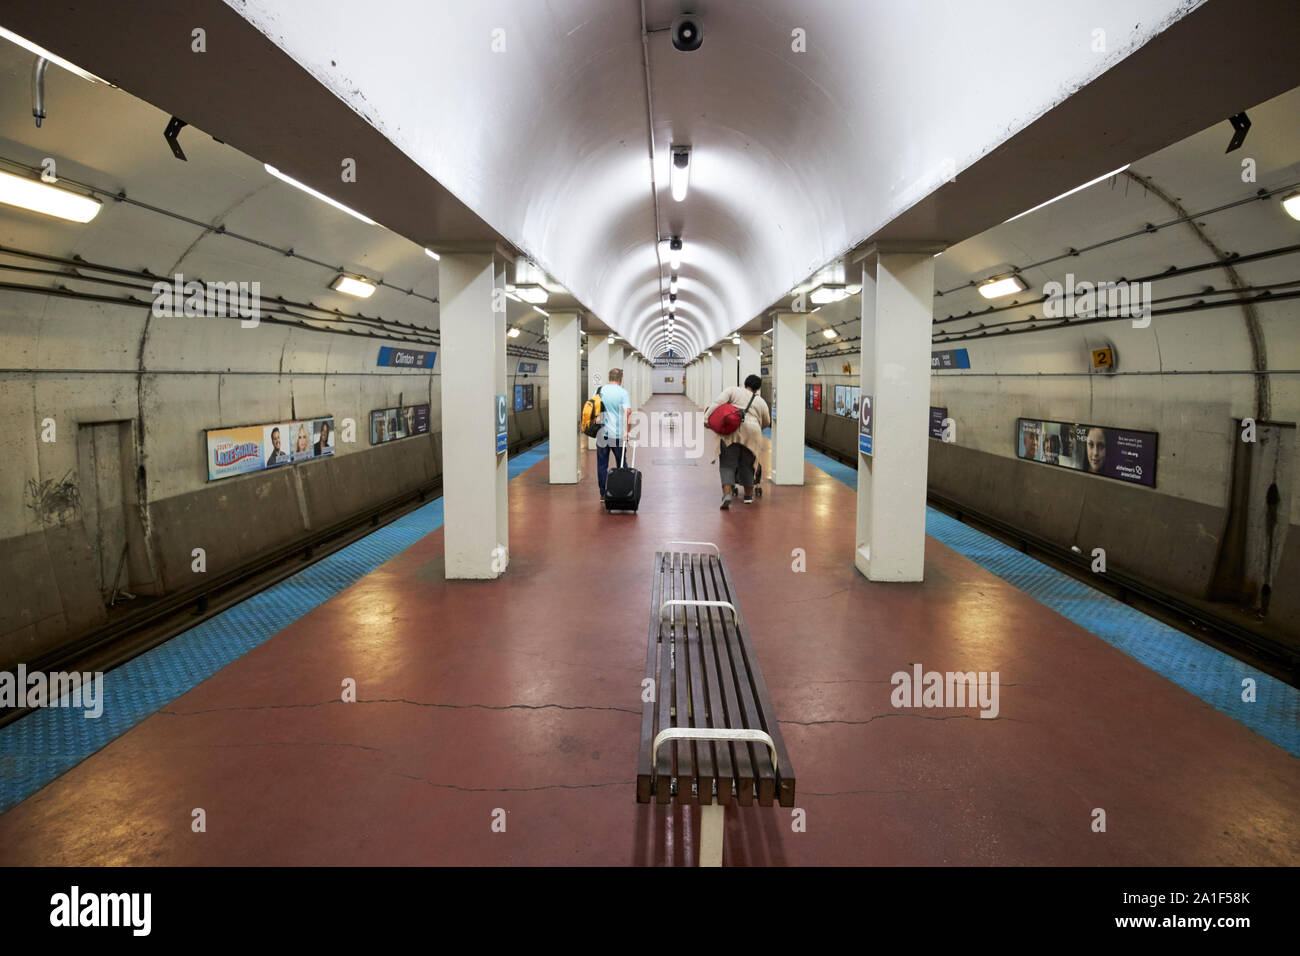 Clinton cta la stazione della metropolitana di chicago, illinois, Stati Uniti d'America Foto Stock